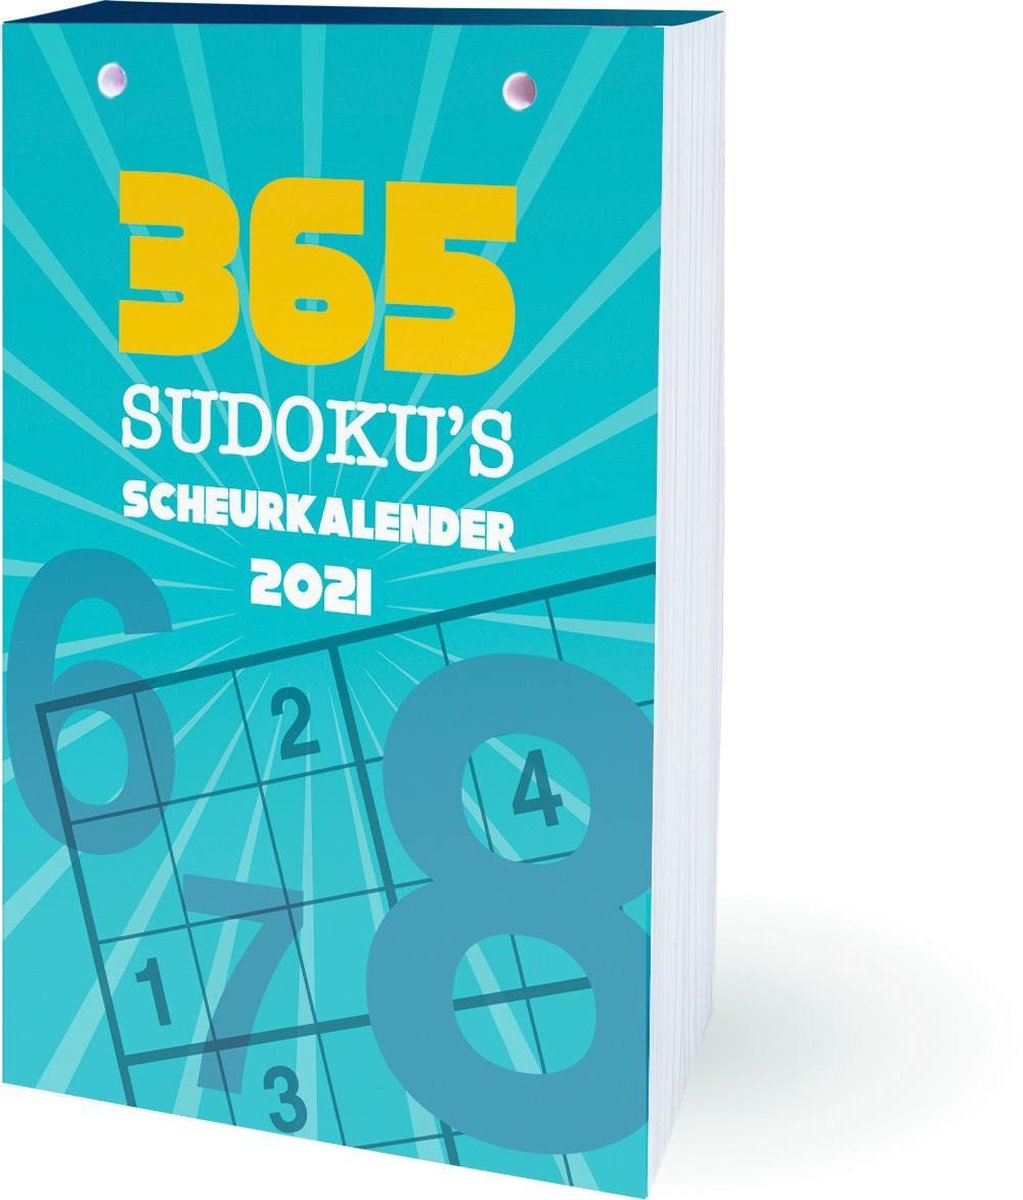 Scheurkalender - 2021 - Sudoku - Interstat